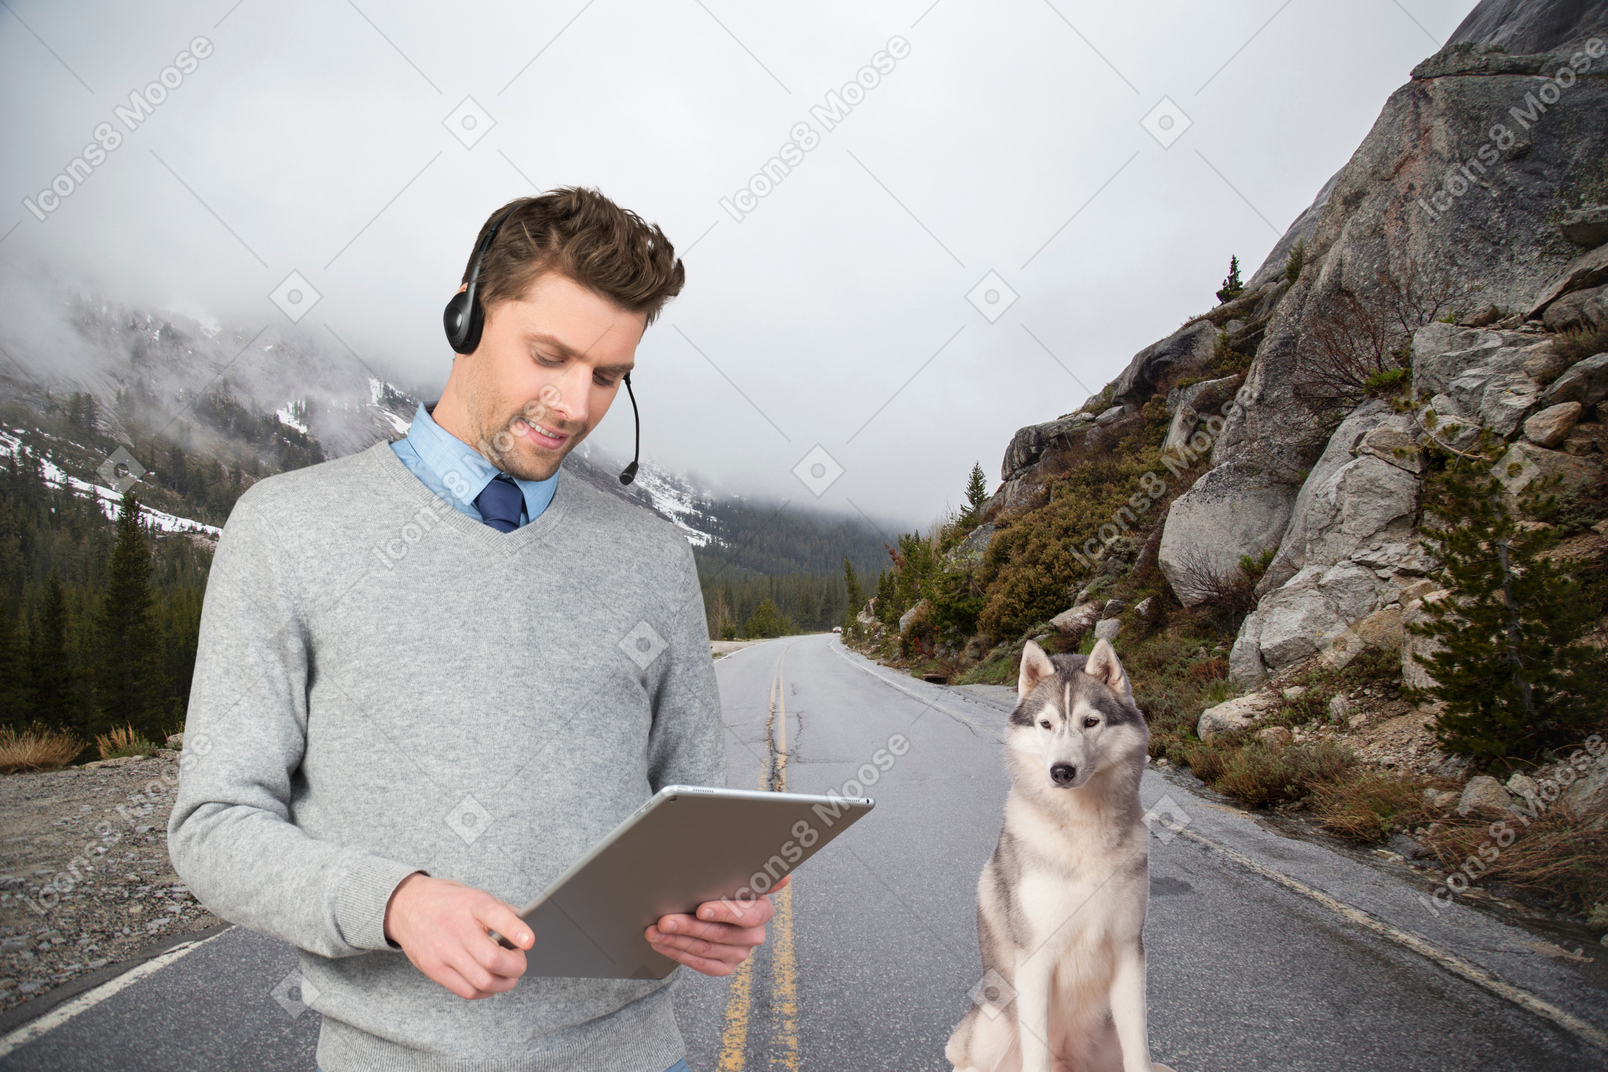 Mann, der remote auf seinem ipad arbeitet, während er mit seinem hund wandert